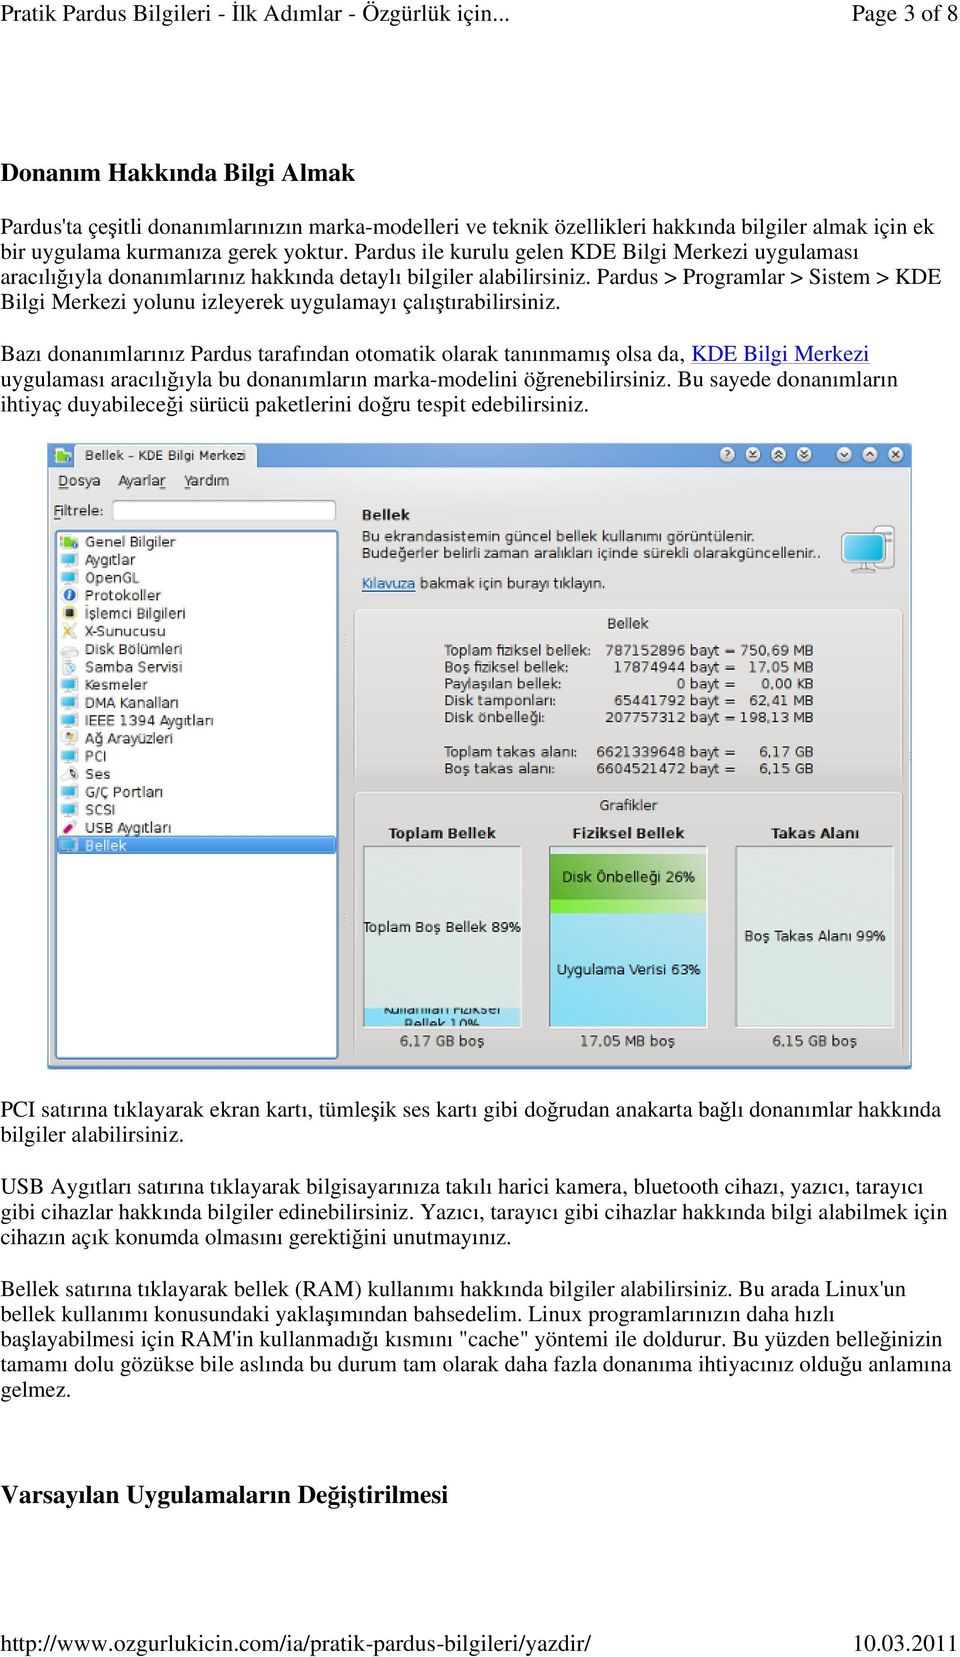 Pardus > Programlar > Sistem > KDE Bilgi Merkezi yolunu izleyerek uygulamayı çalıştırabilirsiniz.